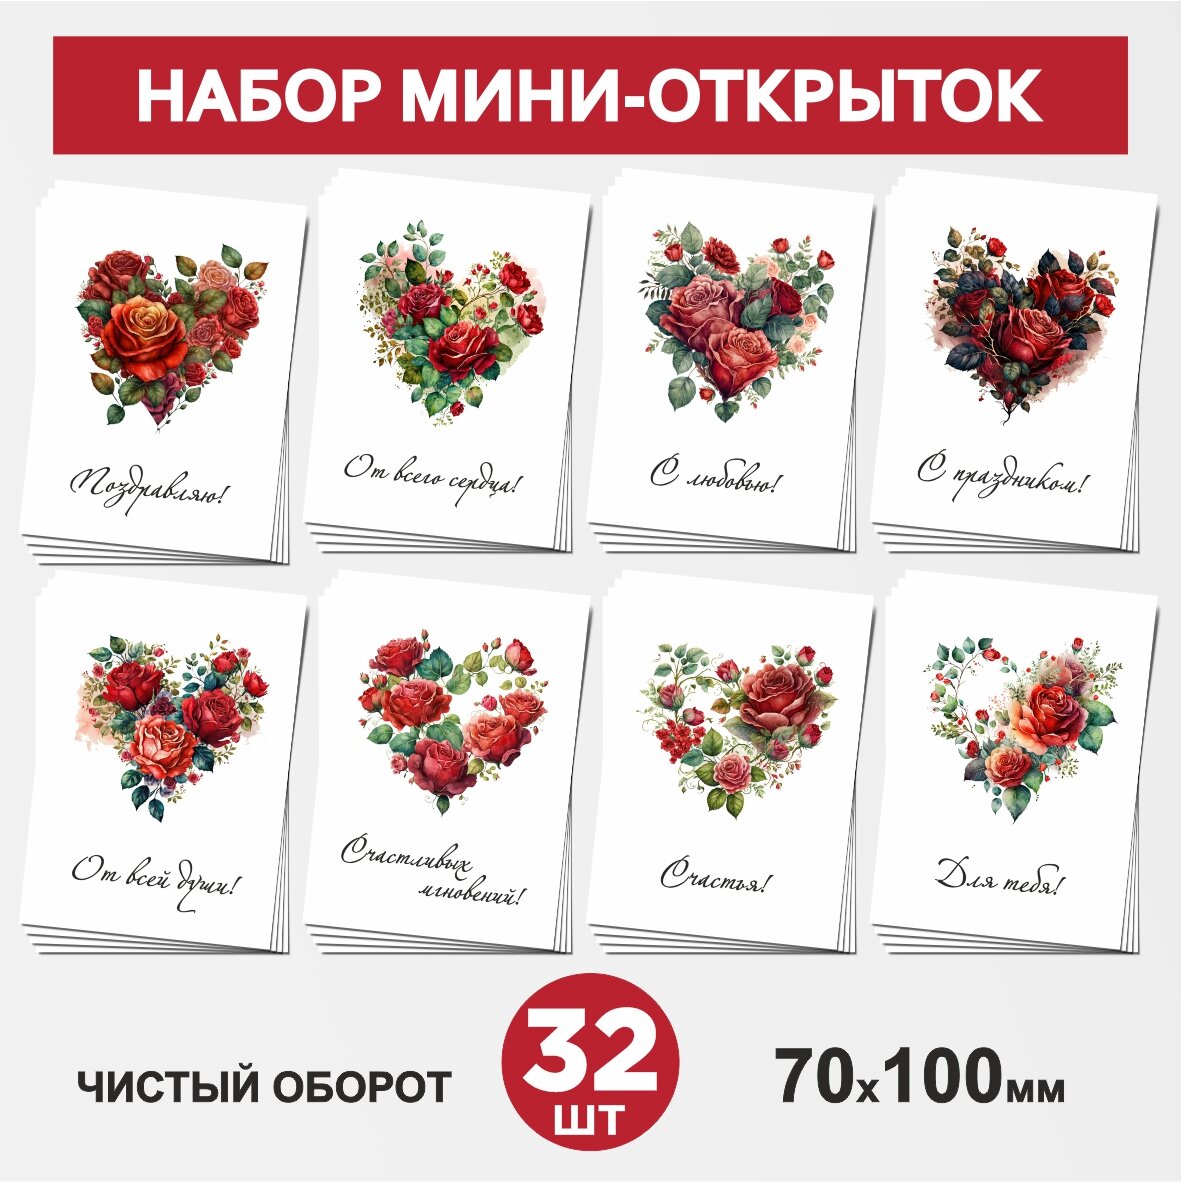 Набор мини-открыток 32 шт, 70х100мм, бирки, карточки для подарков на 14 февраля, 8 Марта, День Рождения - Сердце, цветы №4, postcard_32_heart_set_4